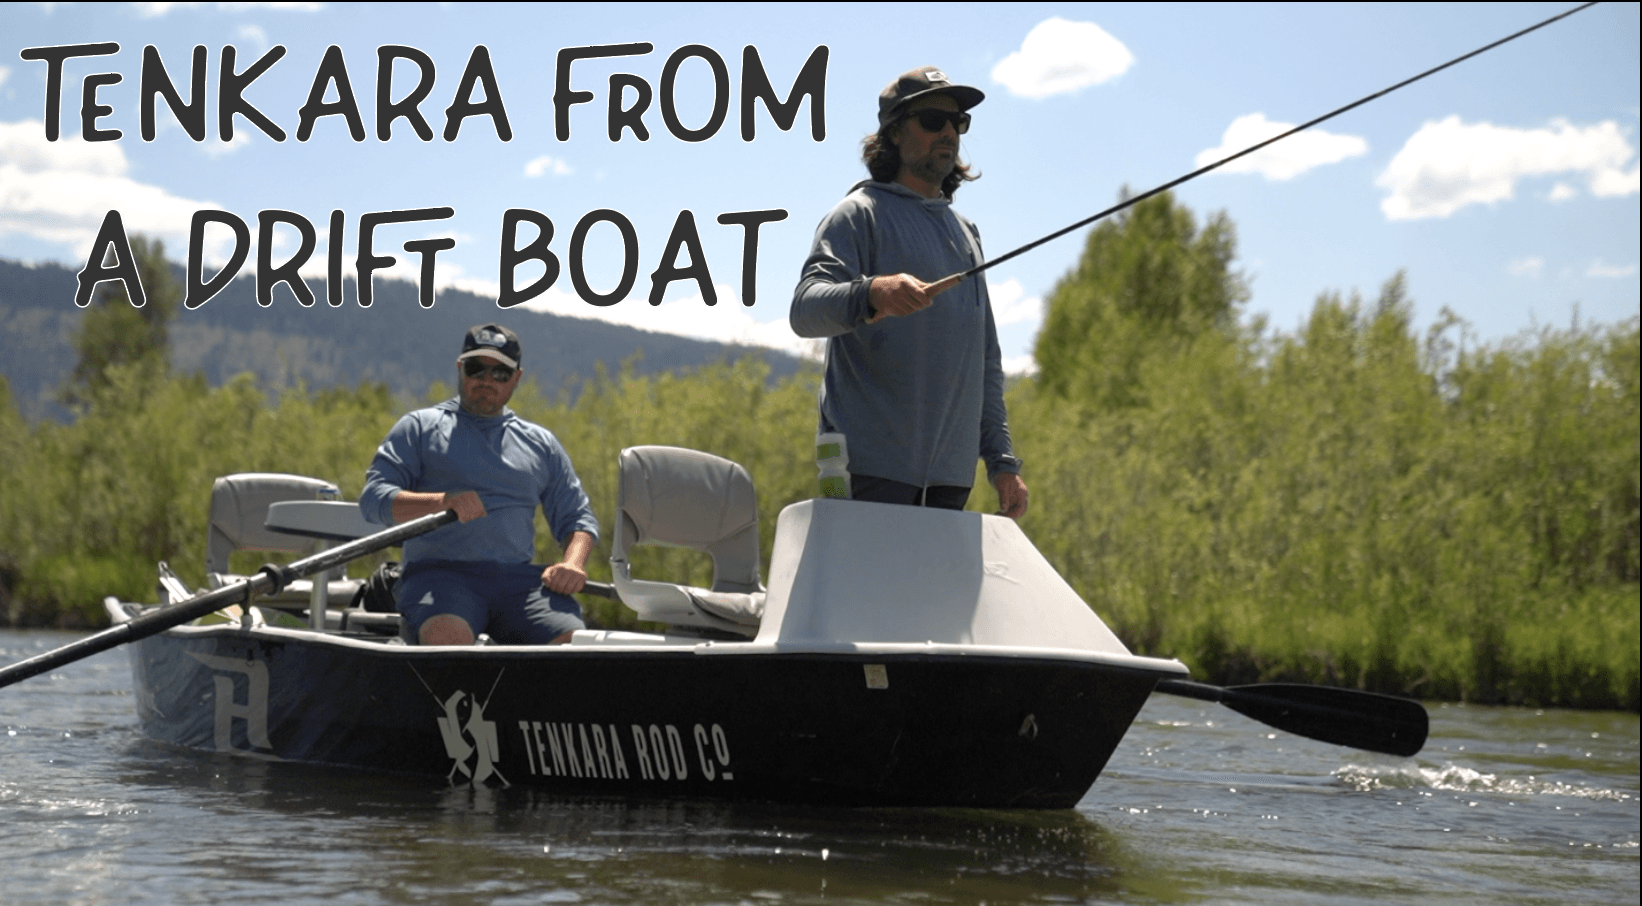 Tenkara Fishing From a Drift Boat - Tenkara Rod Co.